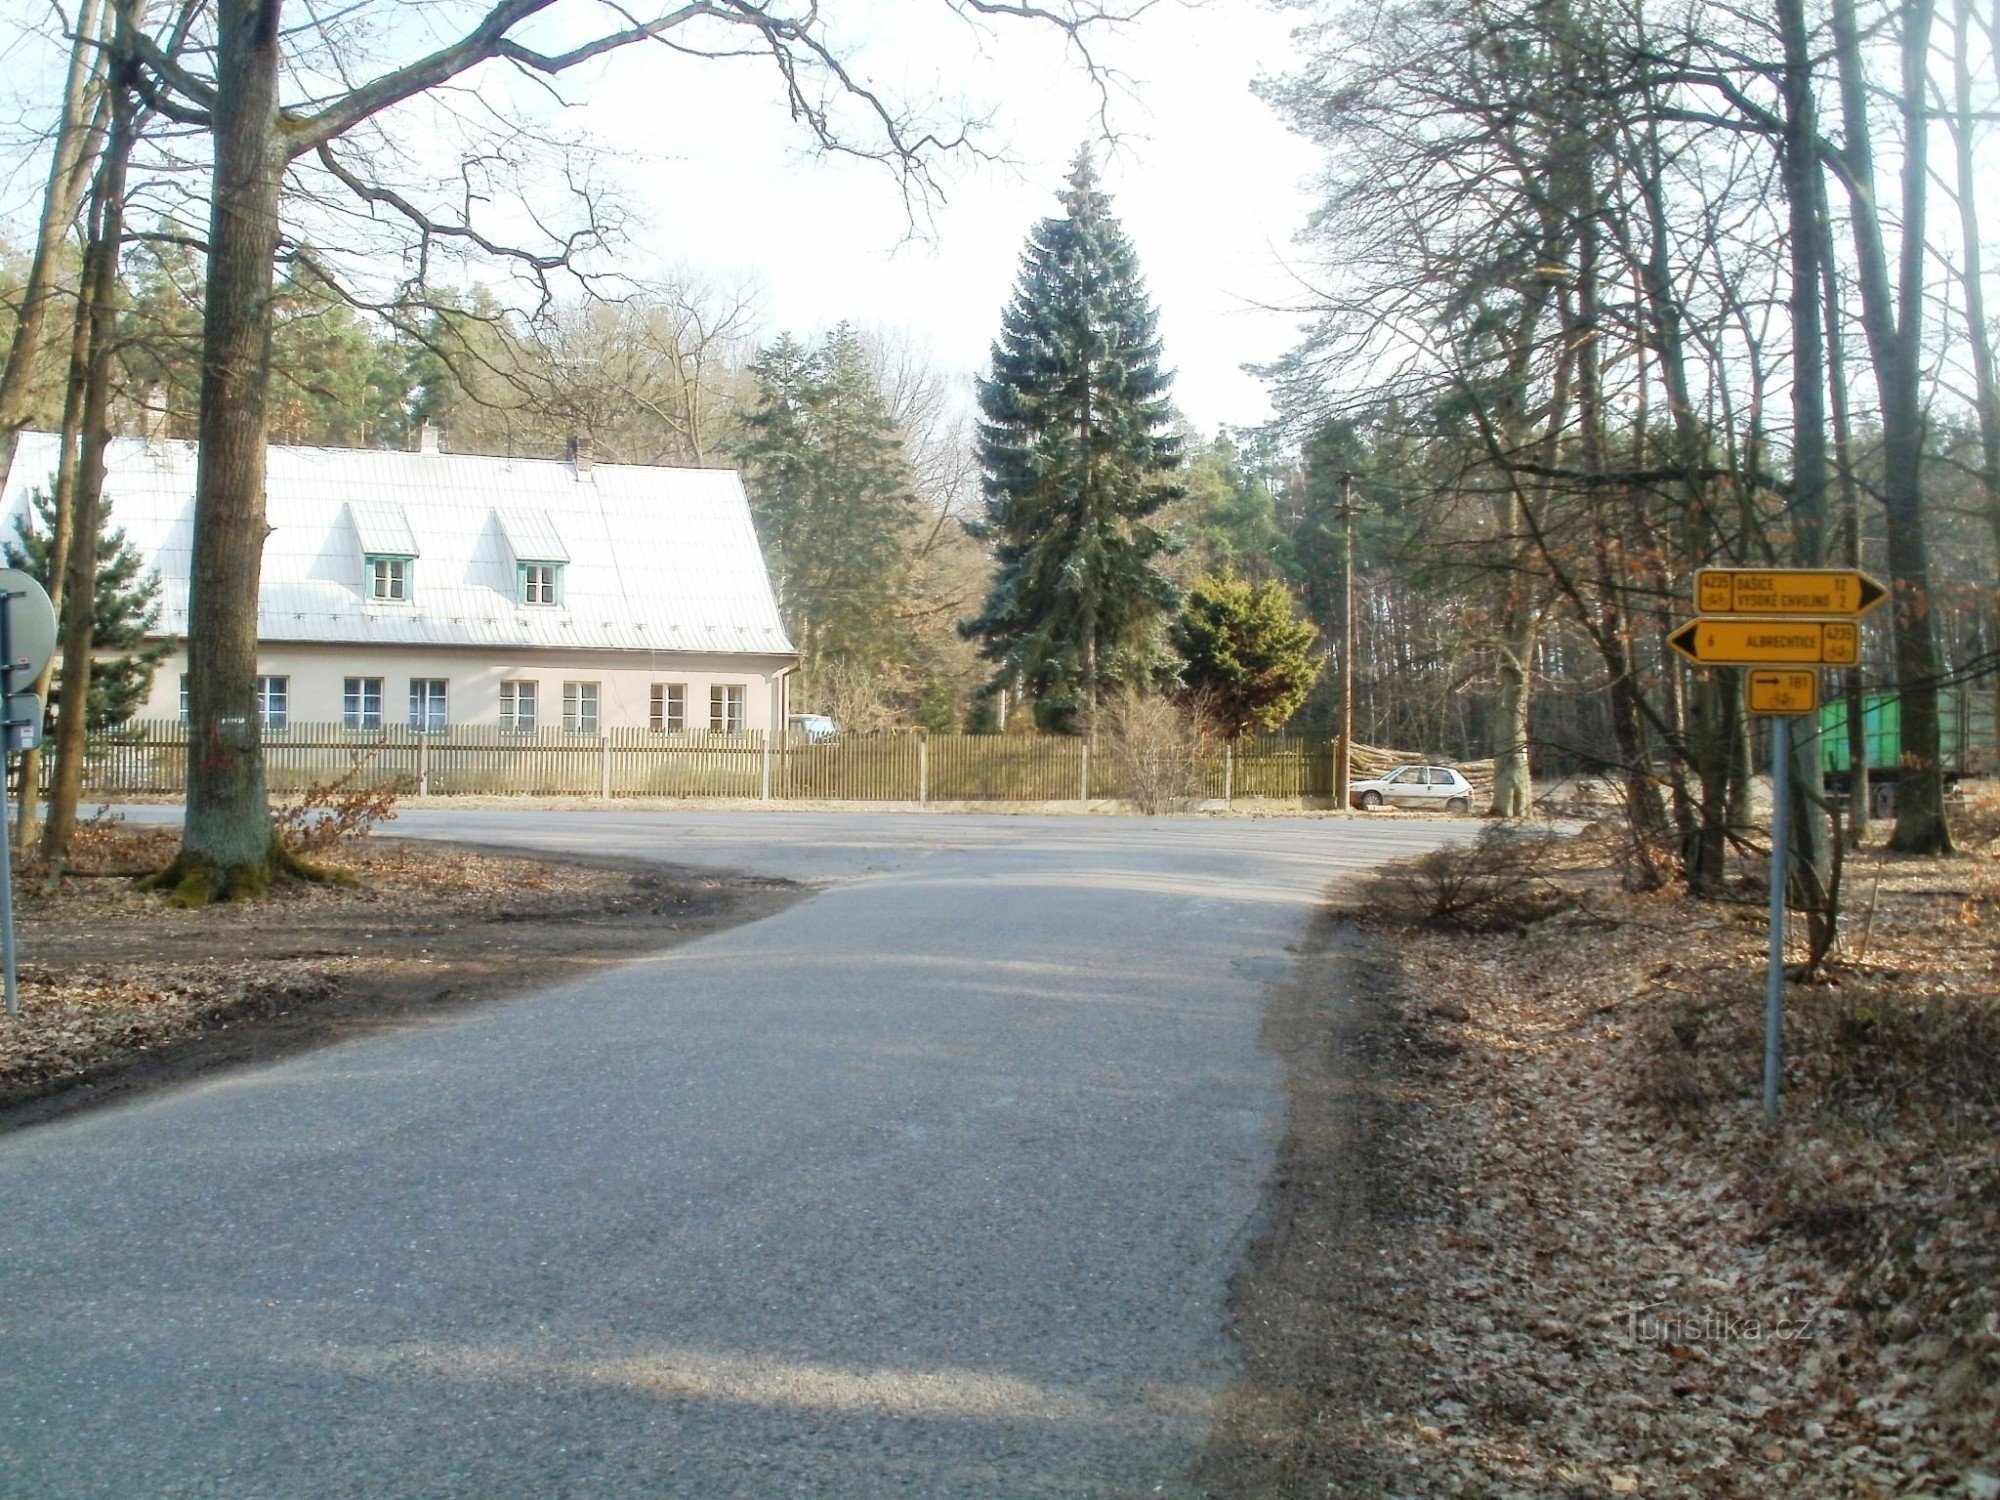 intersecție cicloturistică - rezervație de vânat lângă Vysoké Chvojno